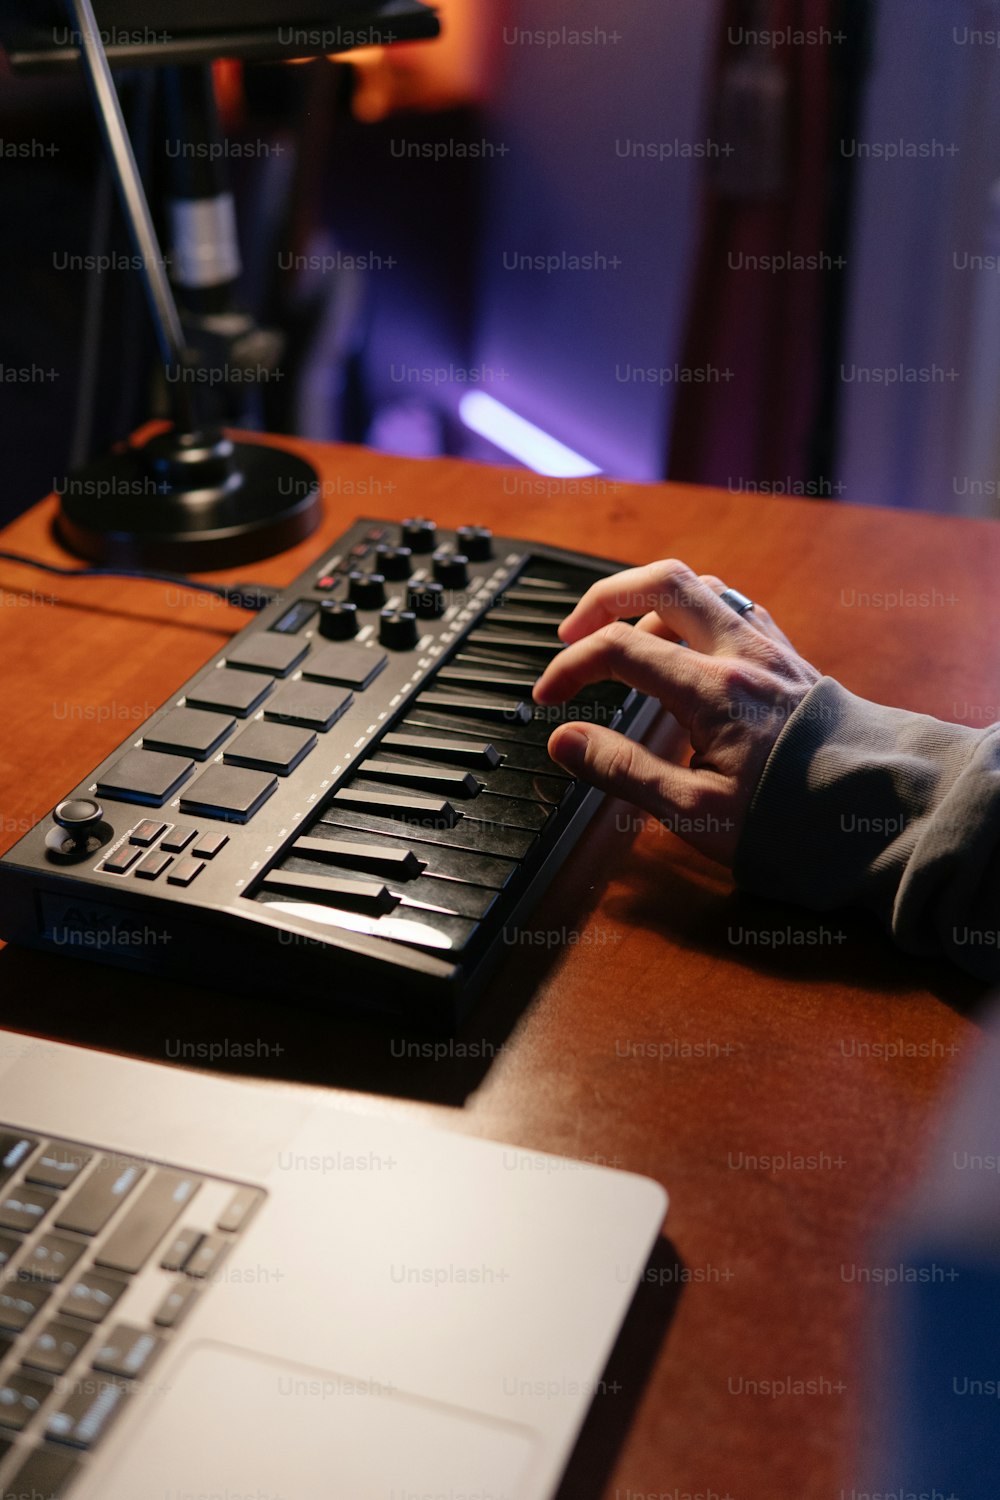 Una persona che digita su una tastiera su una scrivania